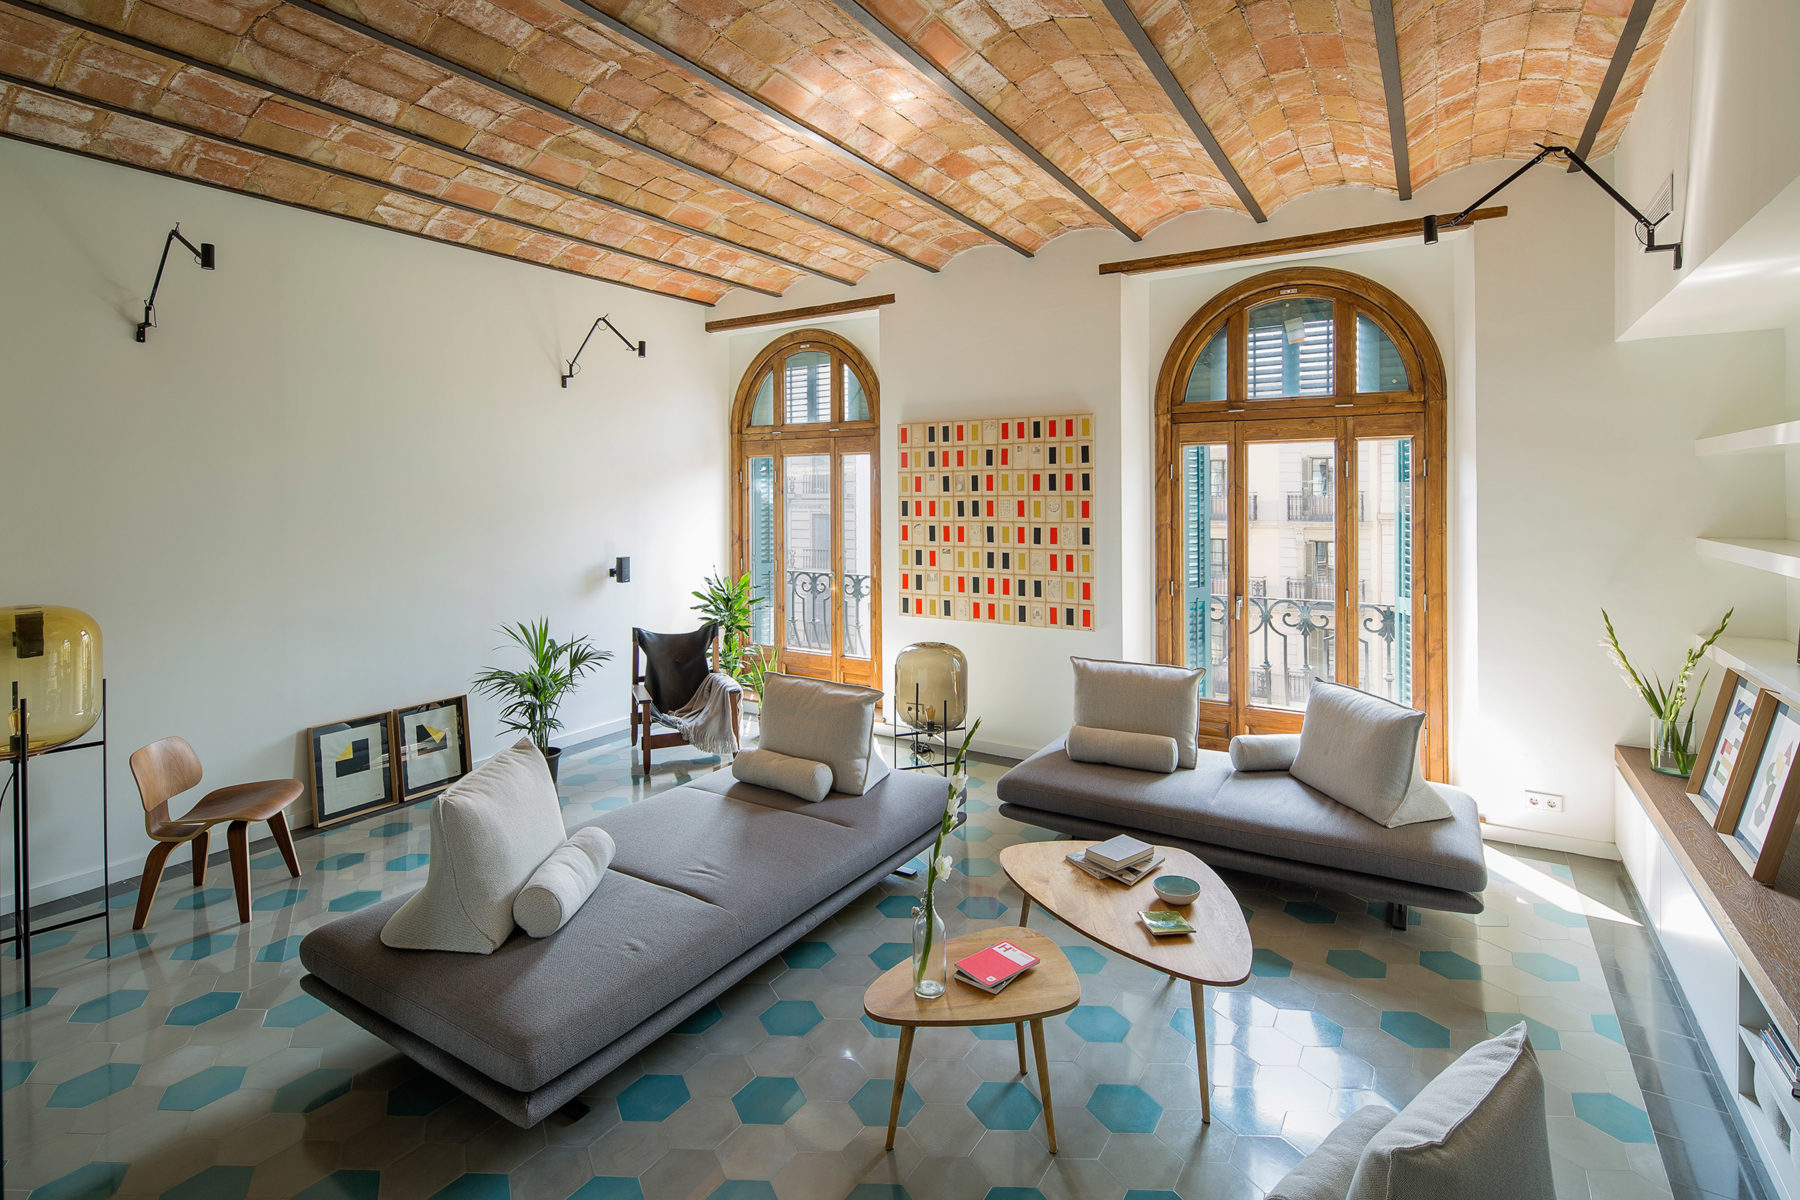 Nook architects potencia la arquitectura original en su proyecto House of mirrors, vivienda en Barcelona